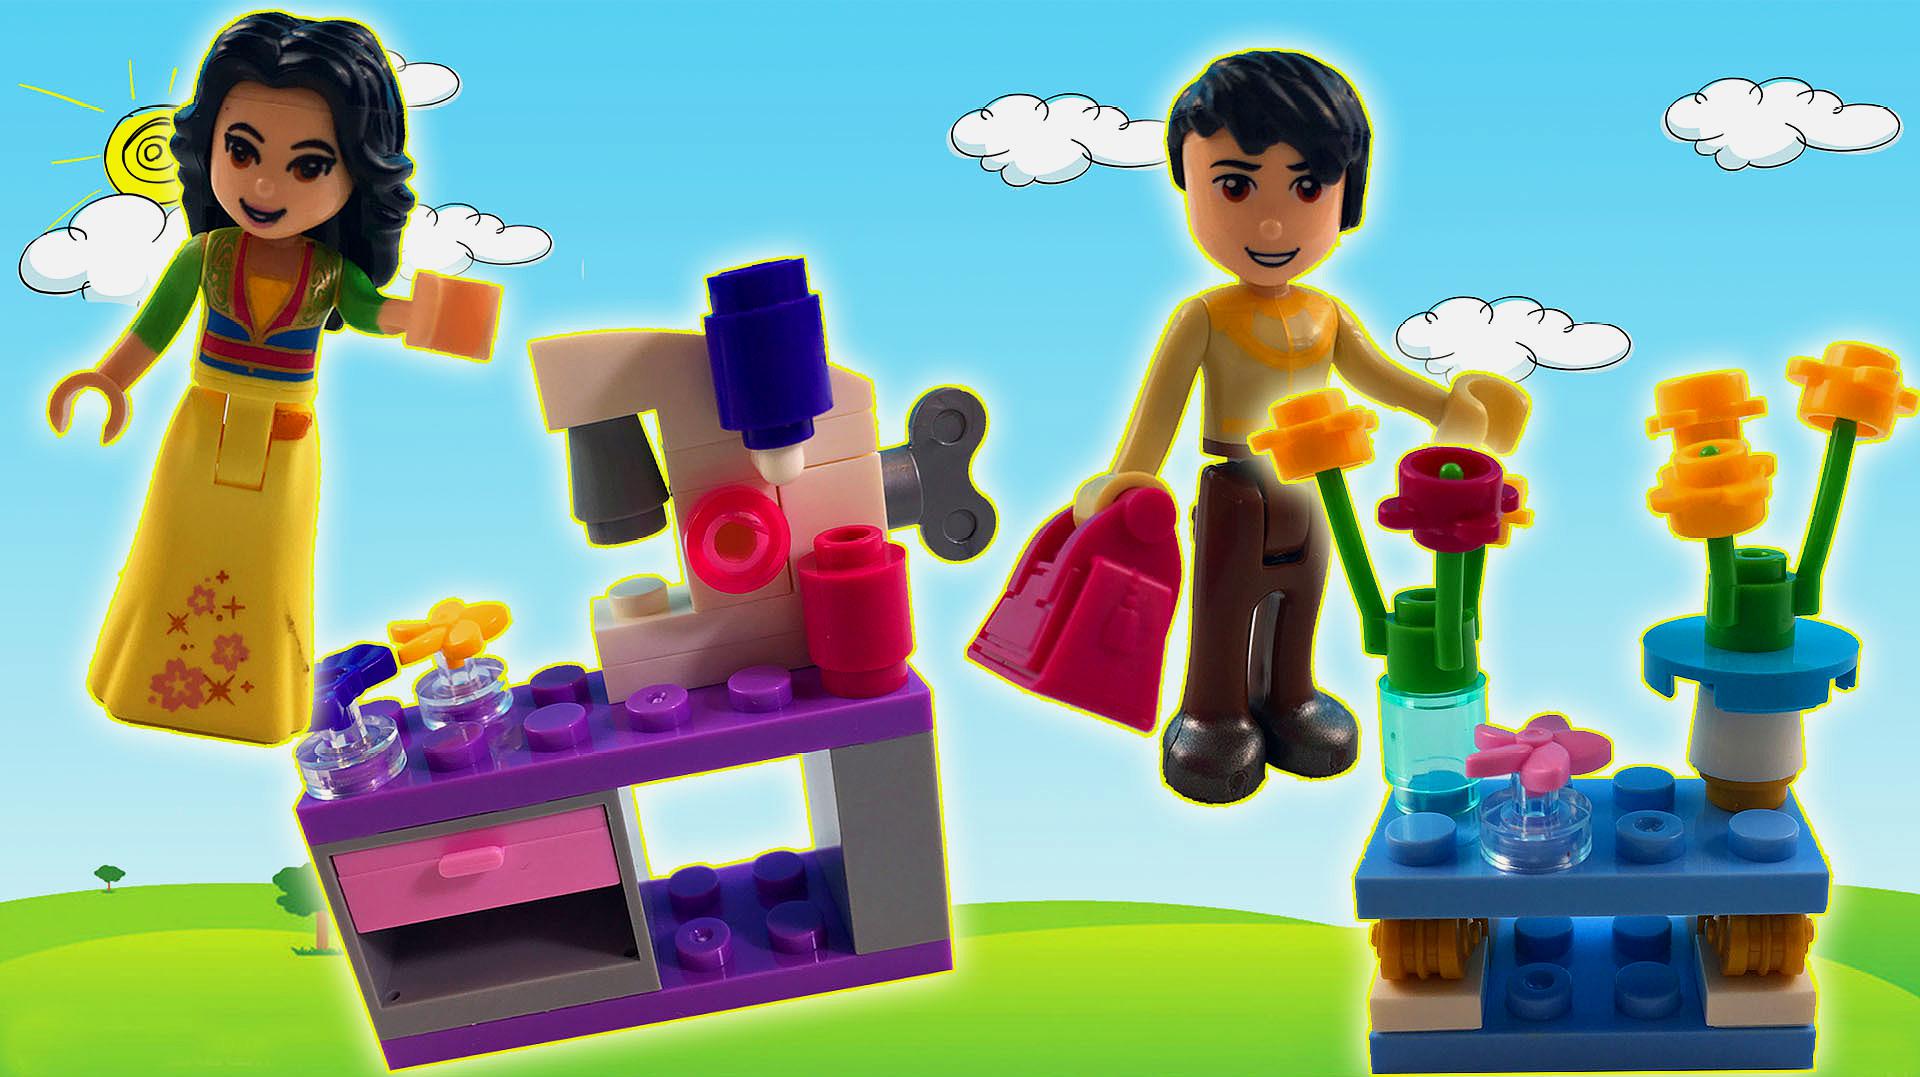 晓童玩具之早教视频:迪士尼公主乐高积木玩具,拼装